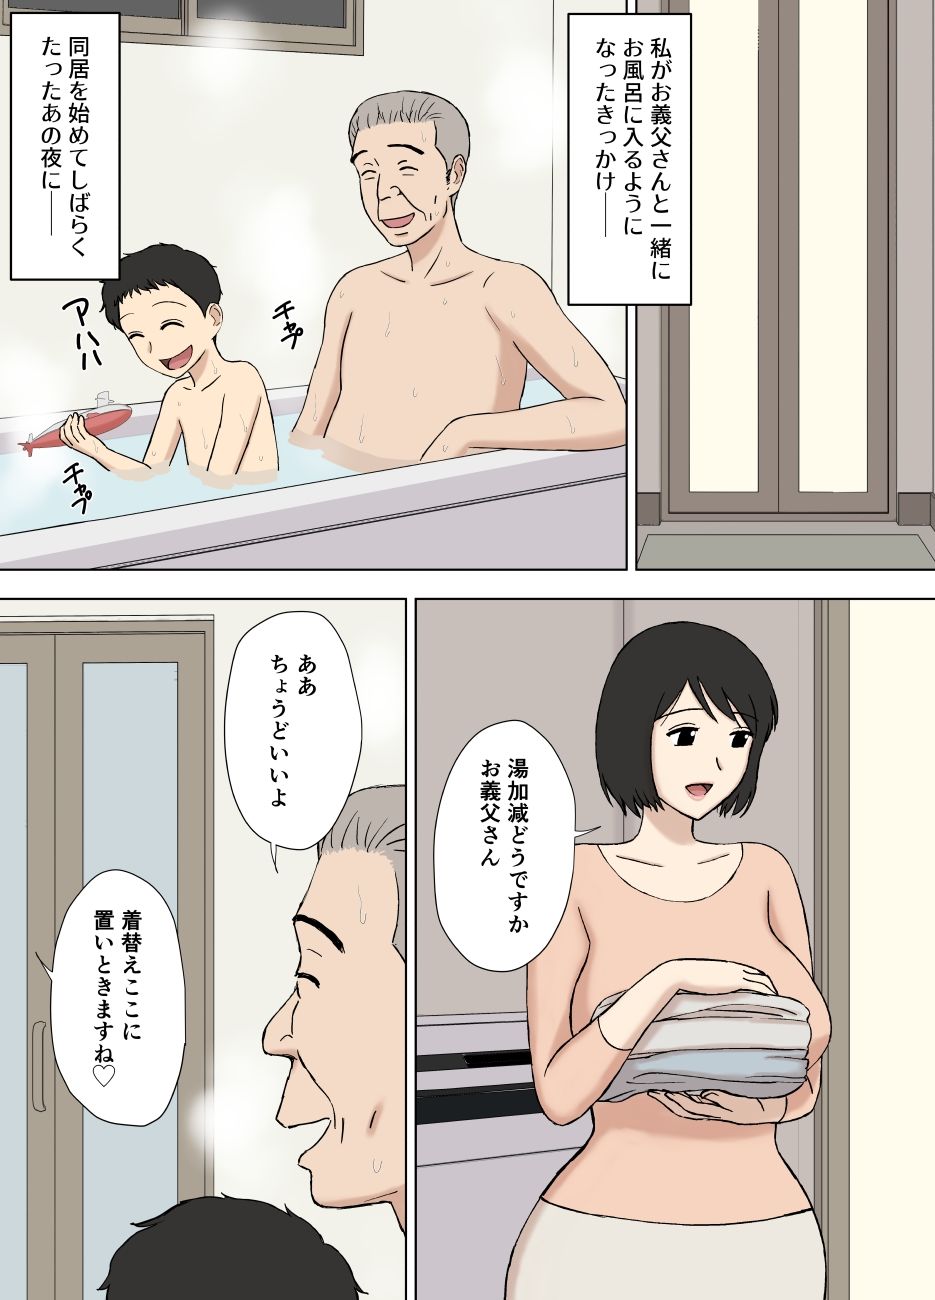 妻が俺の親父と一緒に風呂に入っているんだが・・2_1